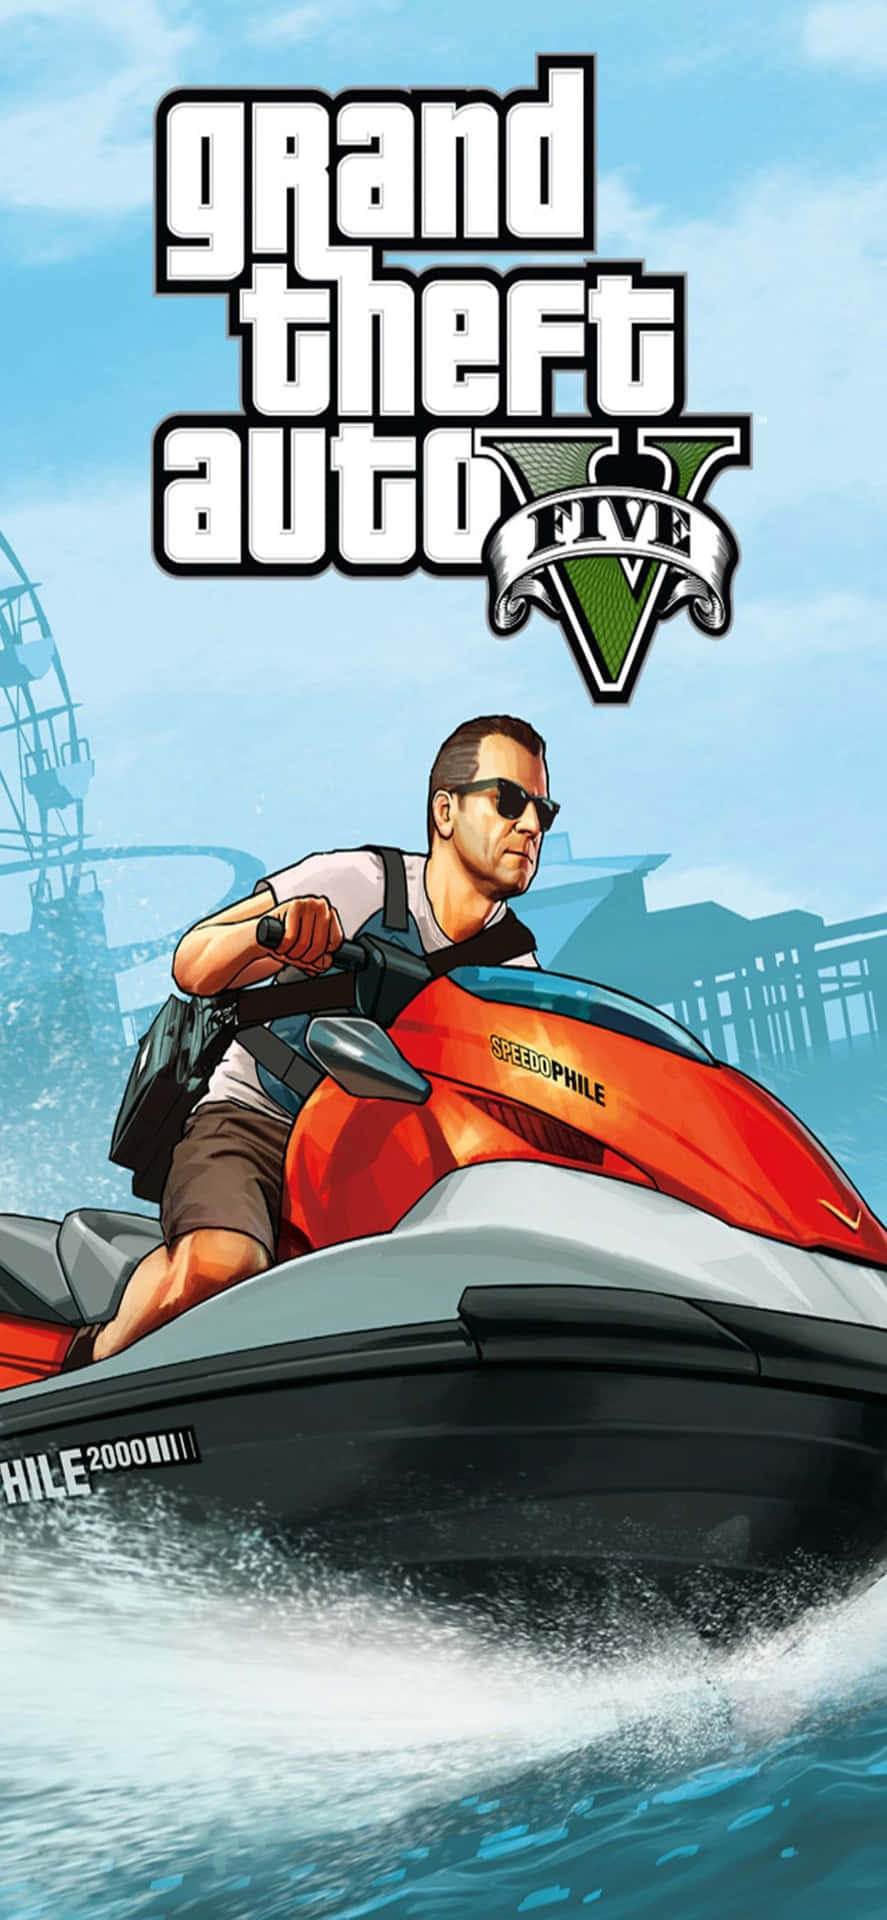 Sfondoiphone X Di Grand Theft Auto V E Moto D'acqua